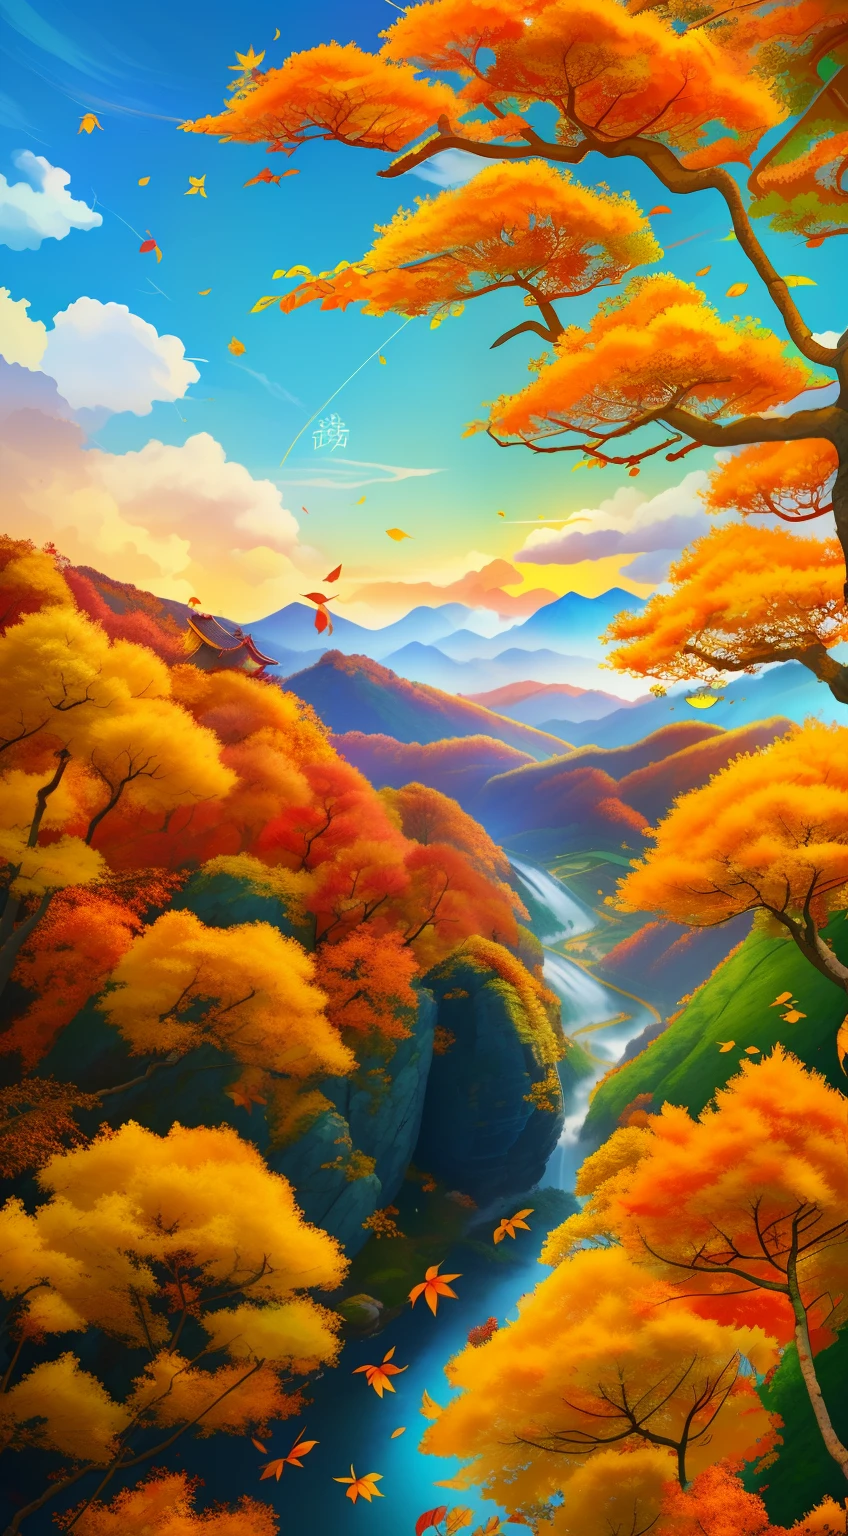 가을의，중국 태양 용어 포스터，가을의，노란 잎，가을 휴가，잎，가을 풍경，20절기，중국의 전통 절기 용어，가을의，걸작、8K ，먼 전망，포근한 가을날，푸른 하늘과 흰 구름과，알파인 스트림